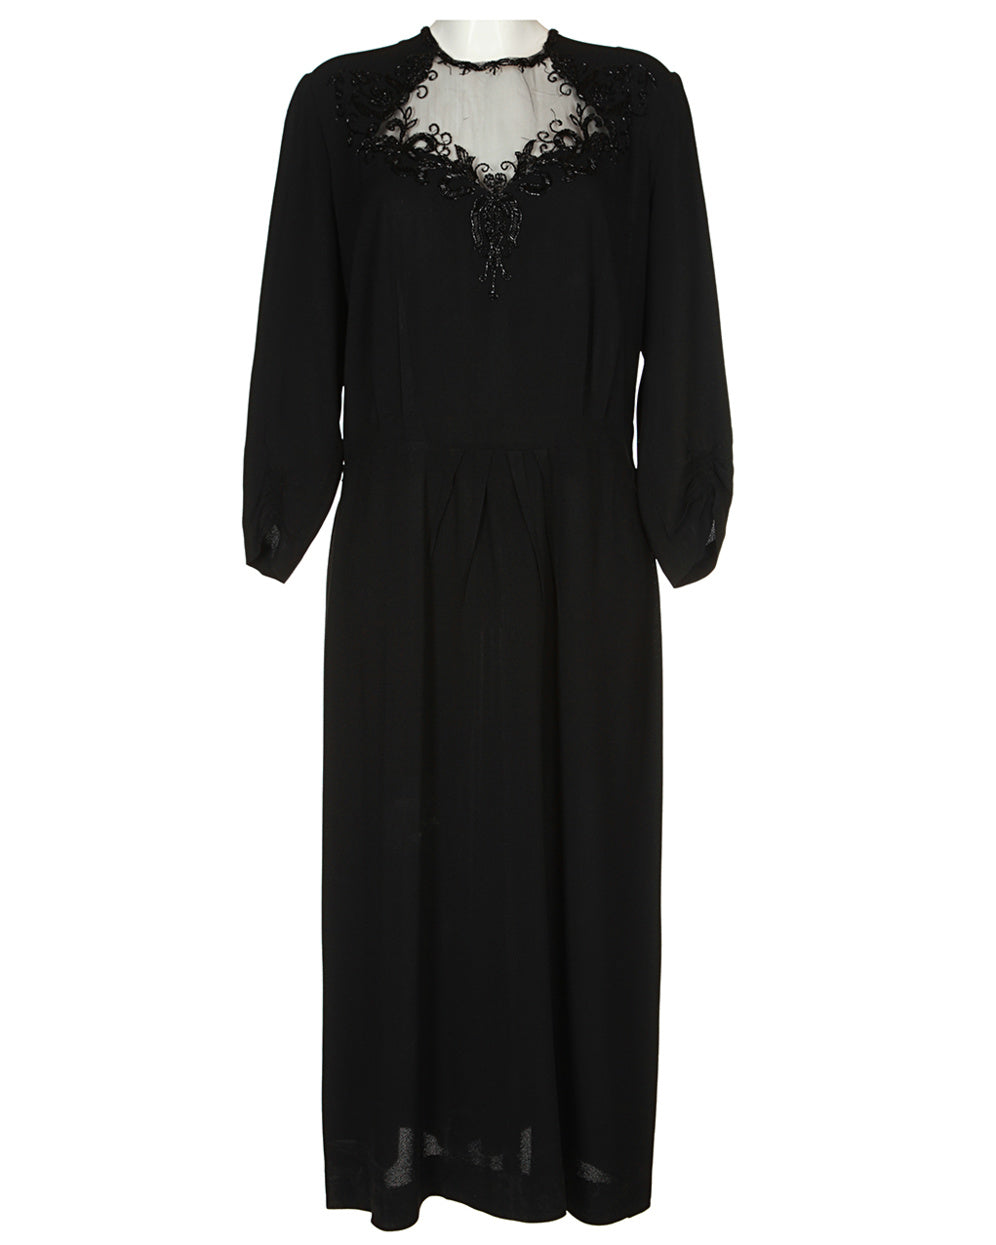 40s Black Beaded Long Sleeved Dress - M